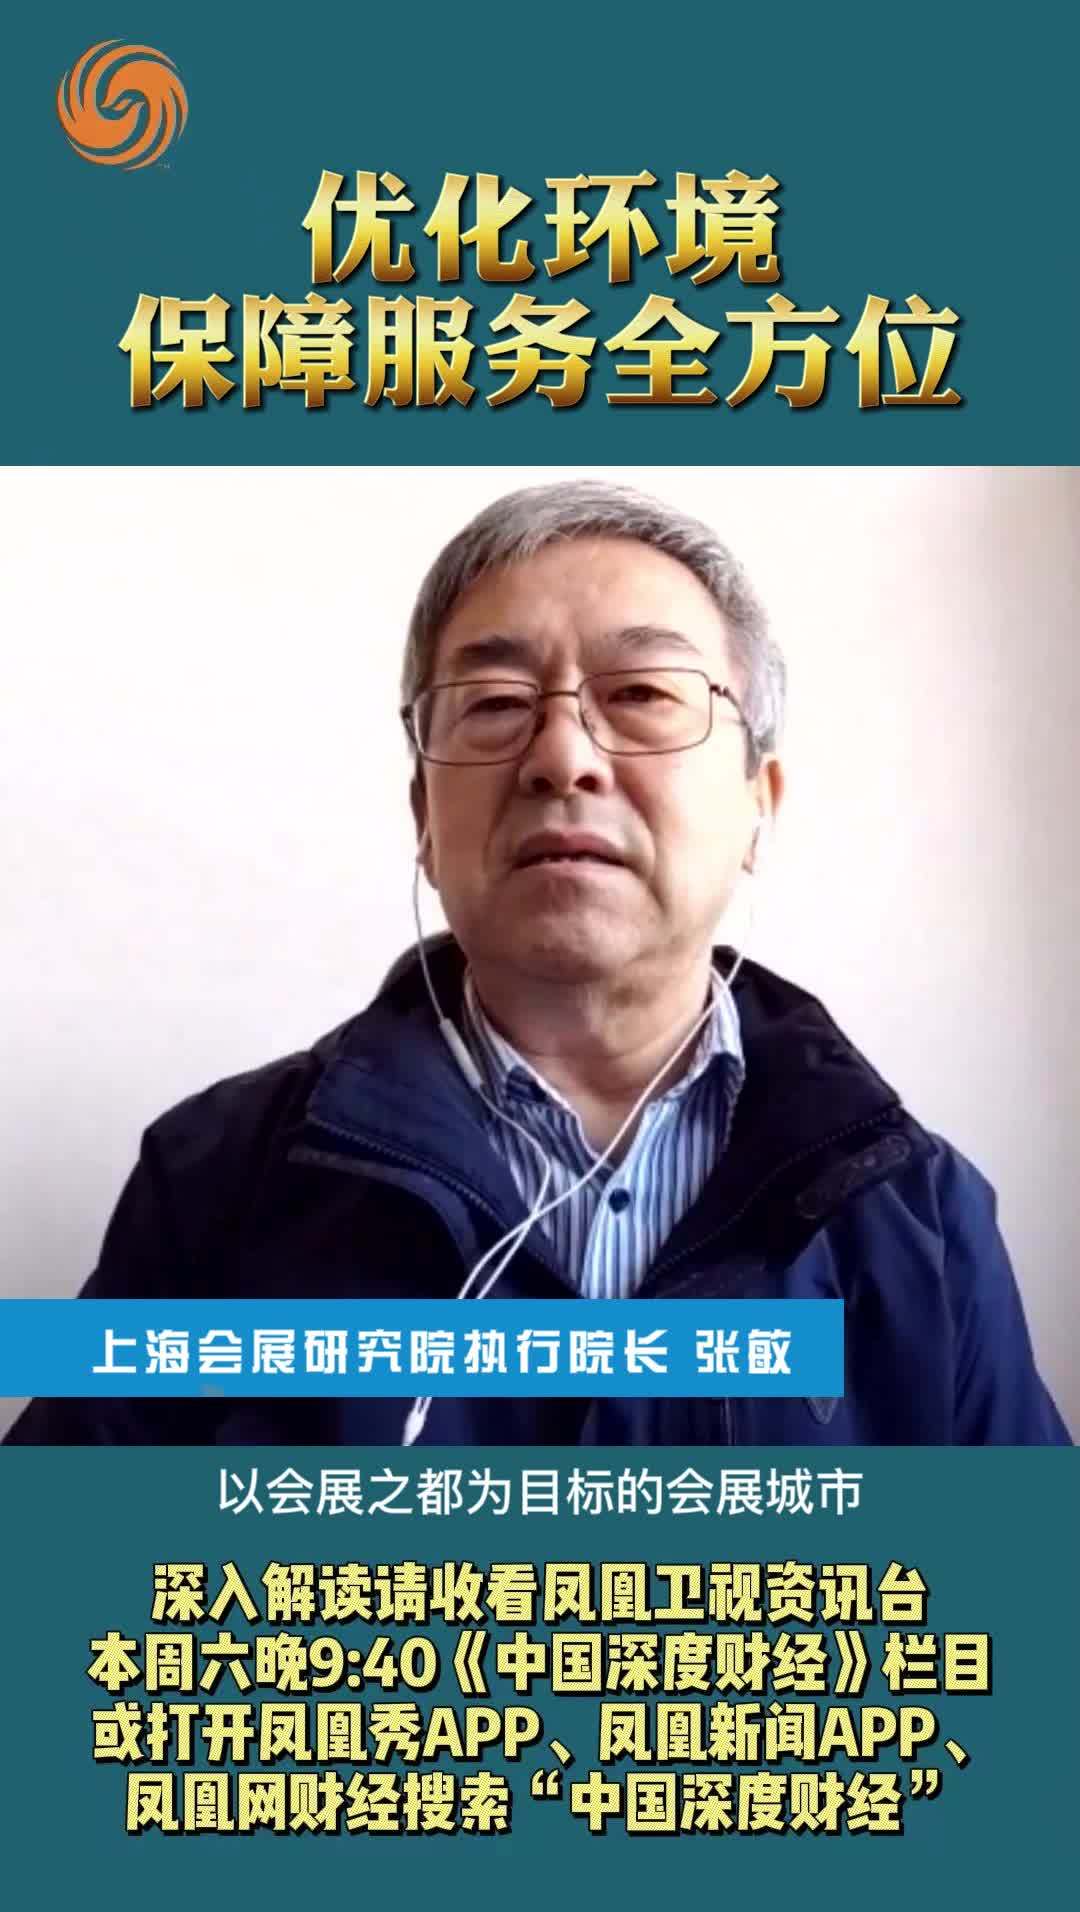 上海会展研究院执行院长张敏：优化环境 保障服务全方位